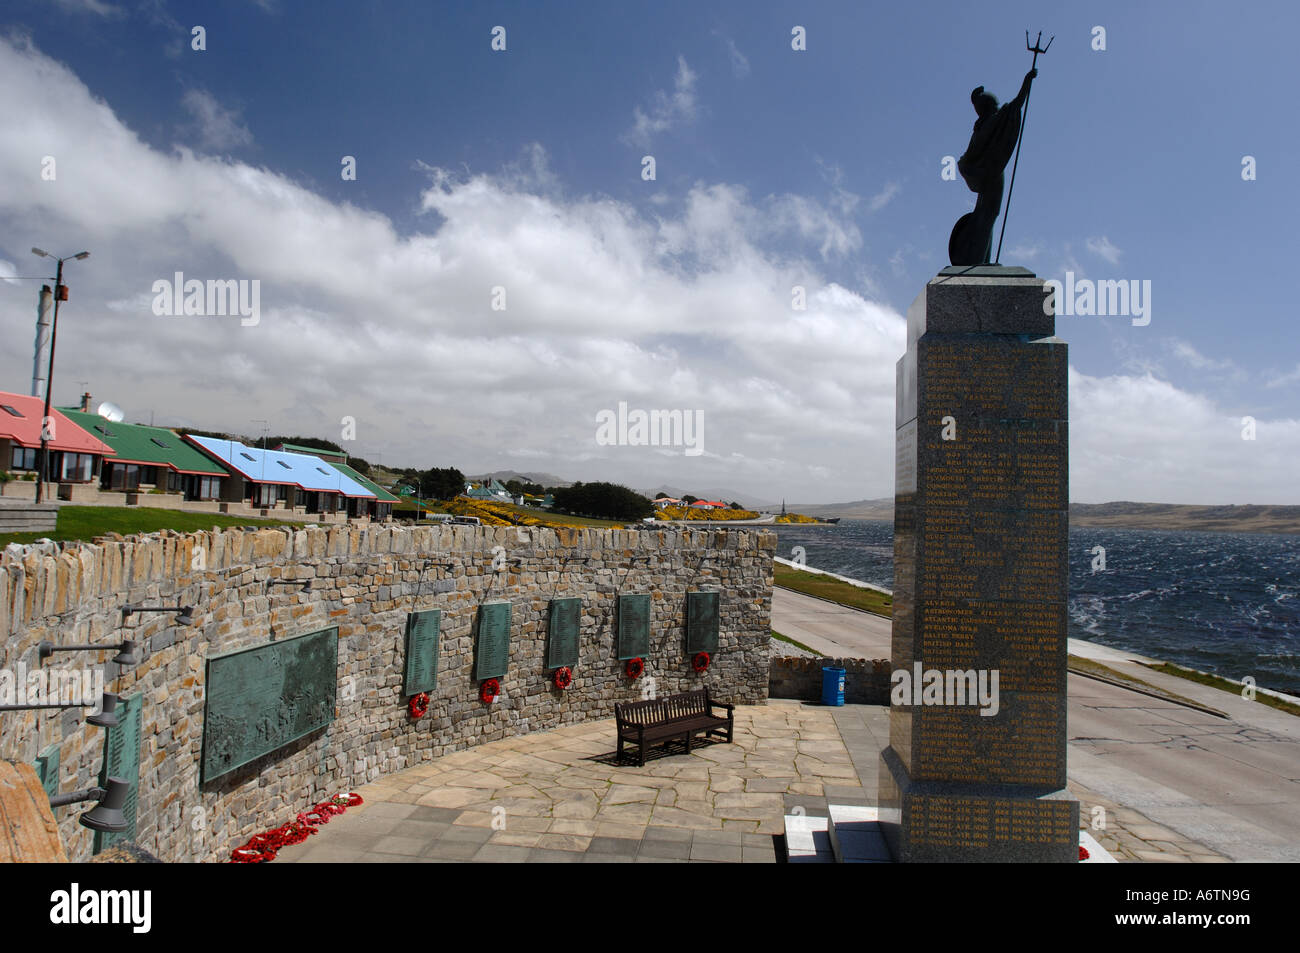 Le monument commémorant la libération de soldats britanniques qui ont combattu dans la guerre des Malouines, 1982 Iles Falkland Banque D'Images